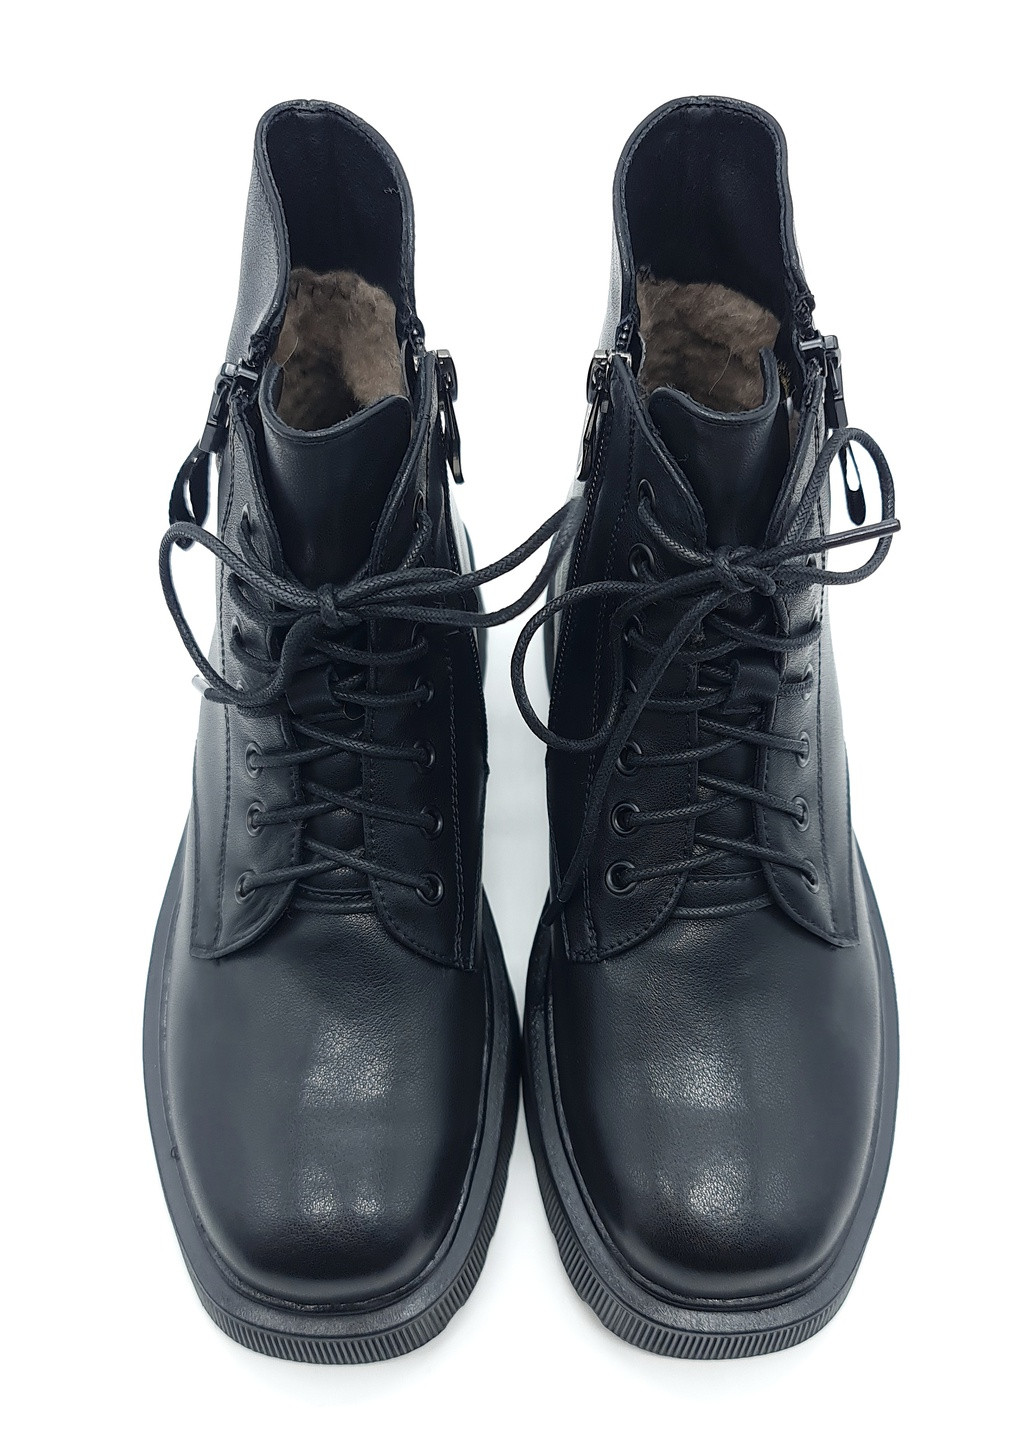 Жіночі черевики зимові чорні шкіряні LM-19-2 235 мм (р) Lino Marano (259299655)